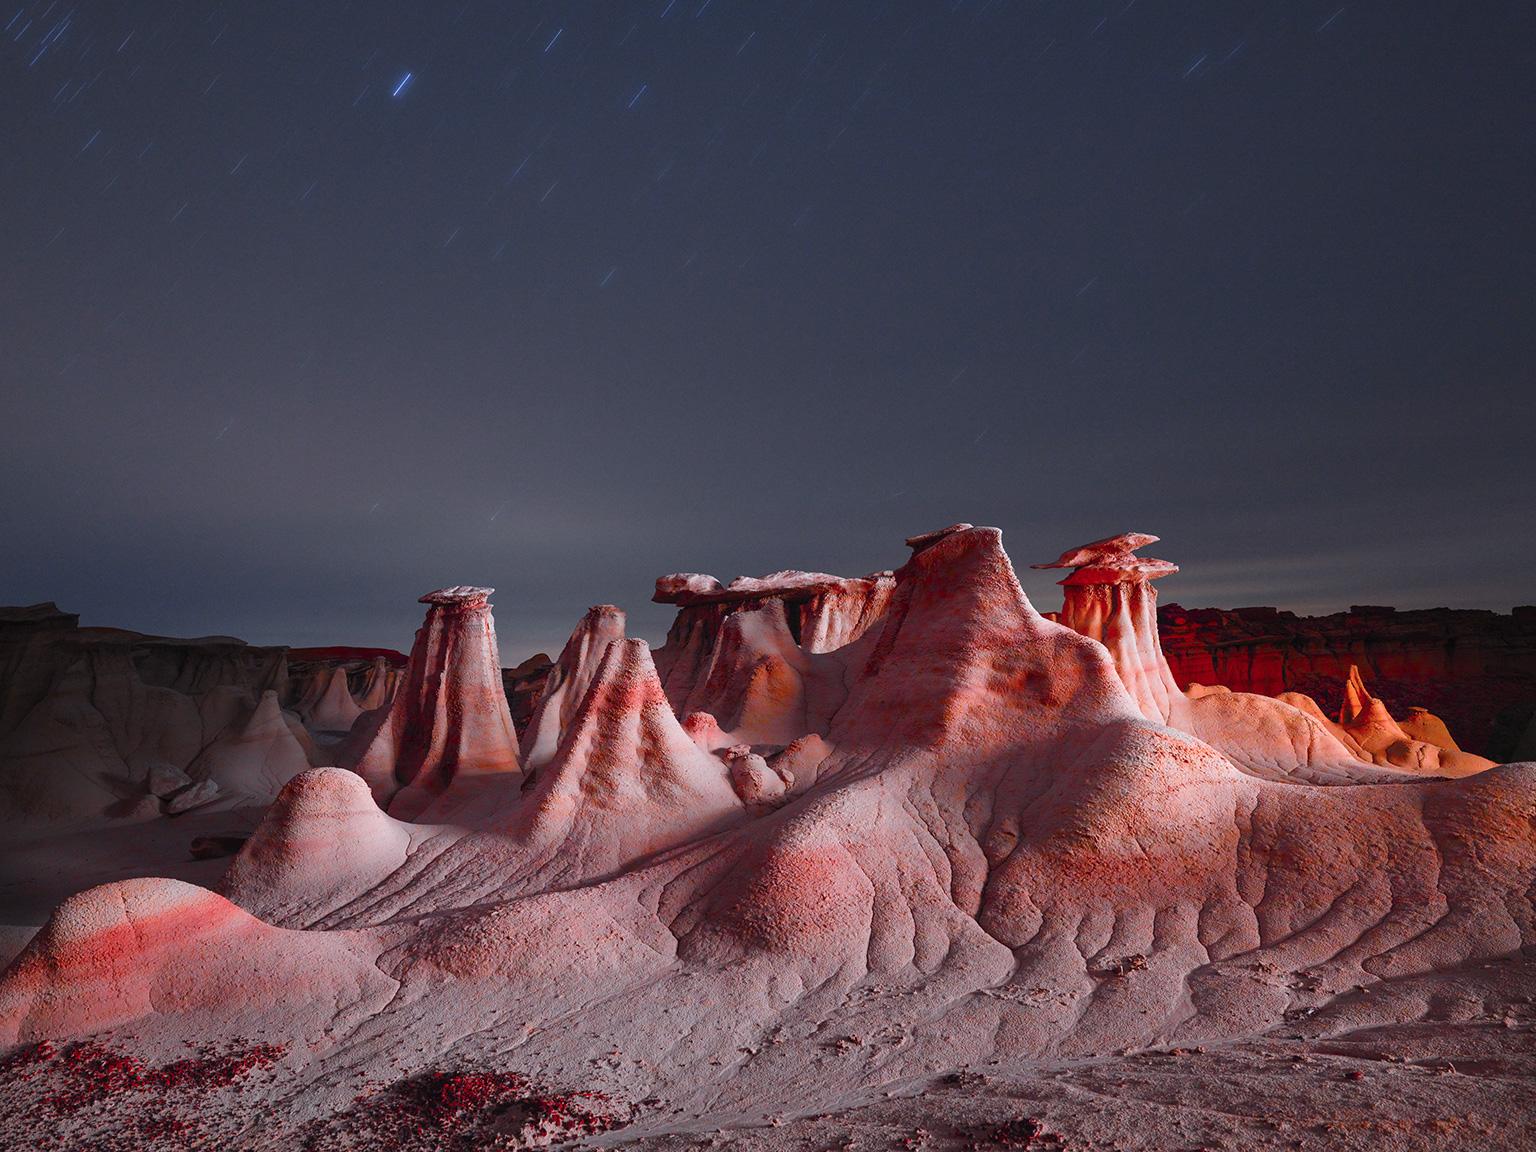 Color Photograph Reuben Wu - Lux Noctis LN3754 - photographie grand format de paysage nocturne éclairé